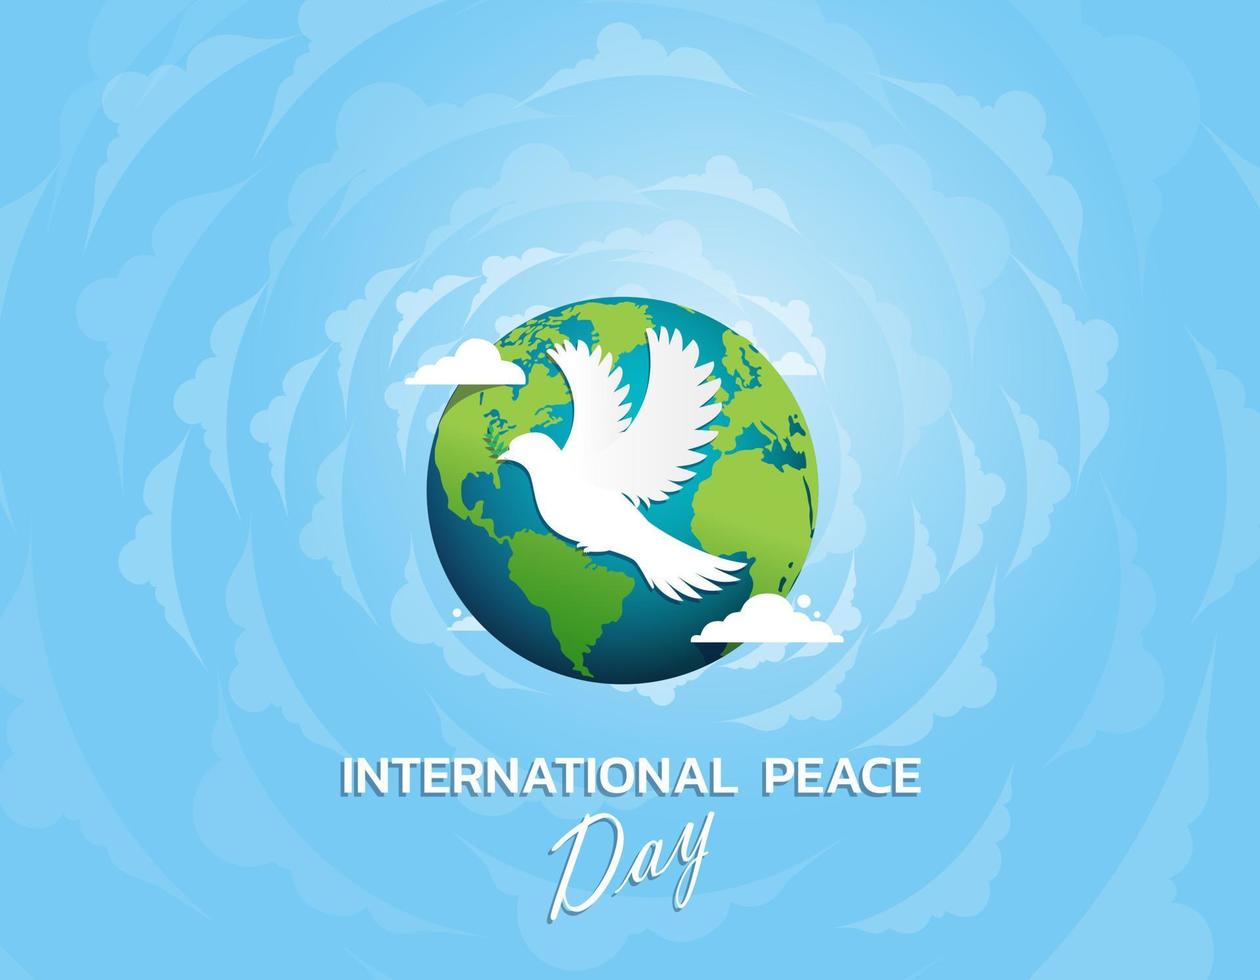 concepto del día internacional de la paz. ilustración concepto actual mundo de la paz. ilustración vectorial. vector